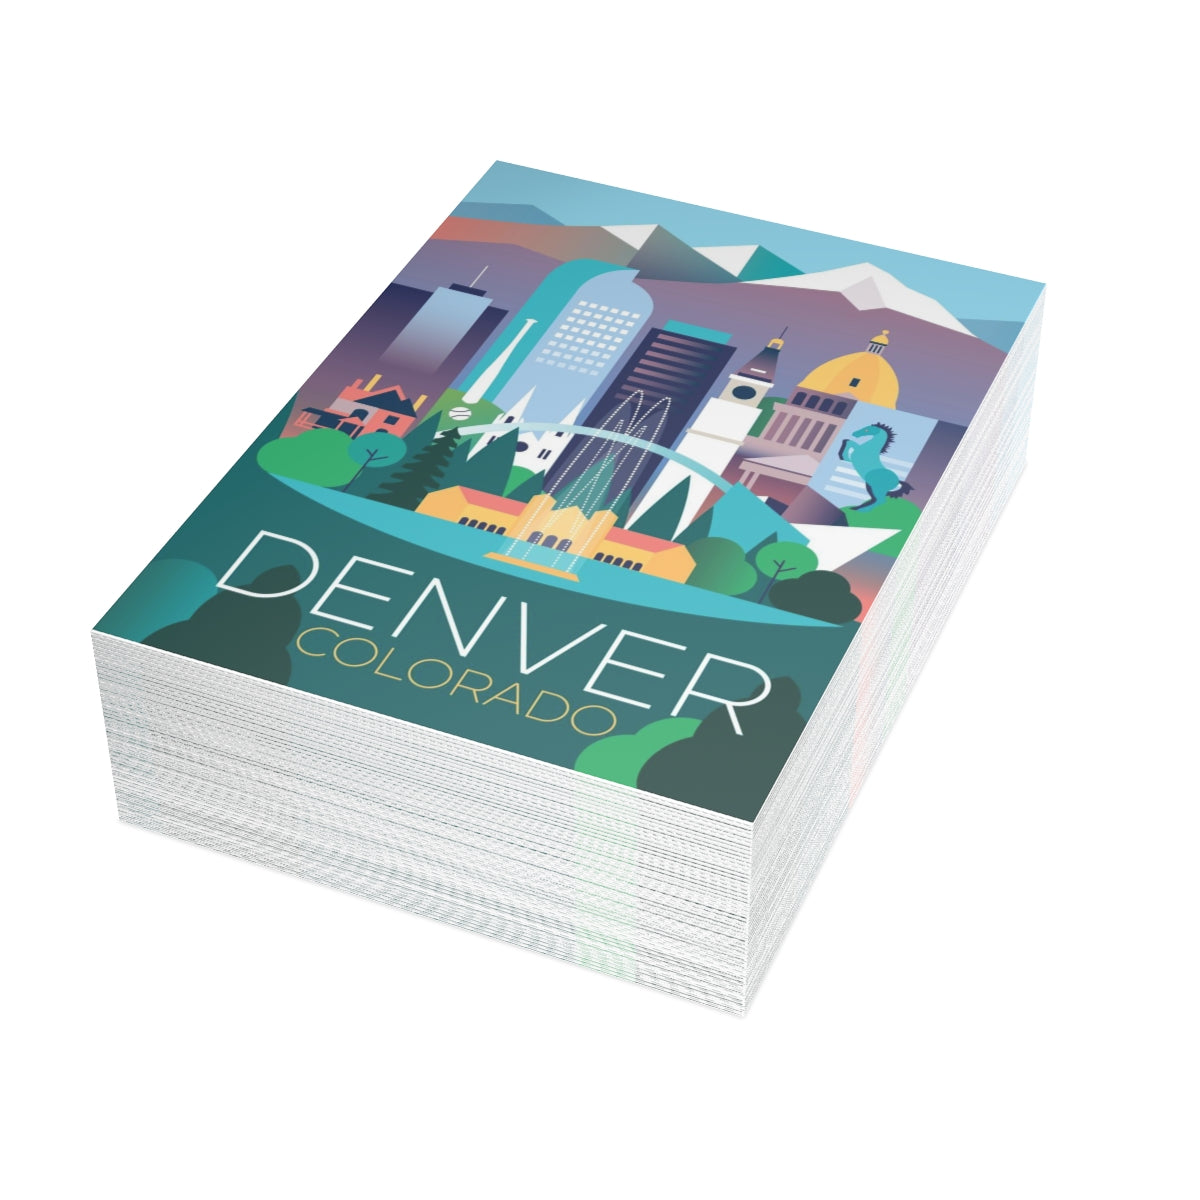 Denver Cartes mates pliées + Enveloppes (10pcs)